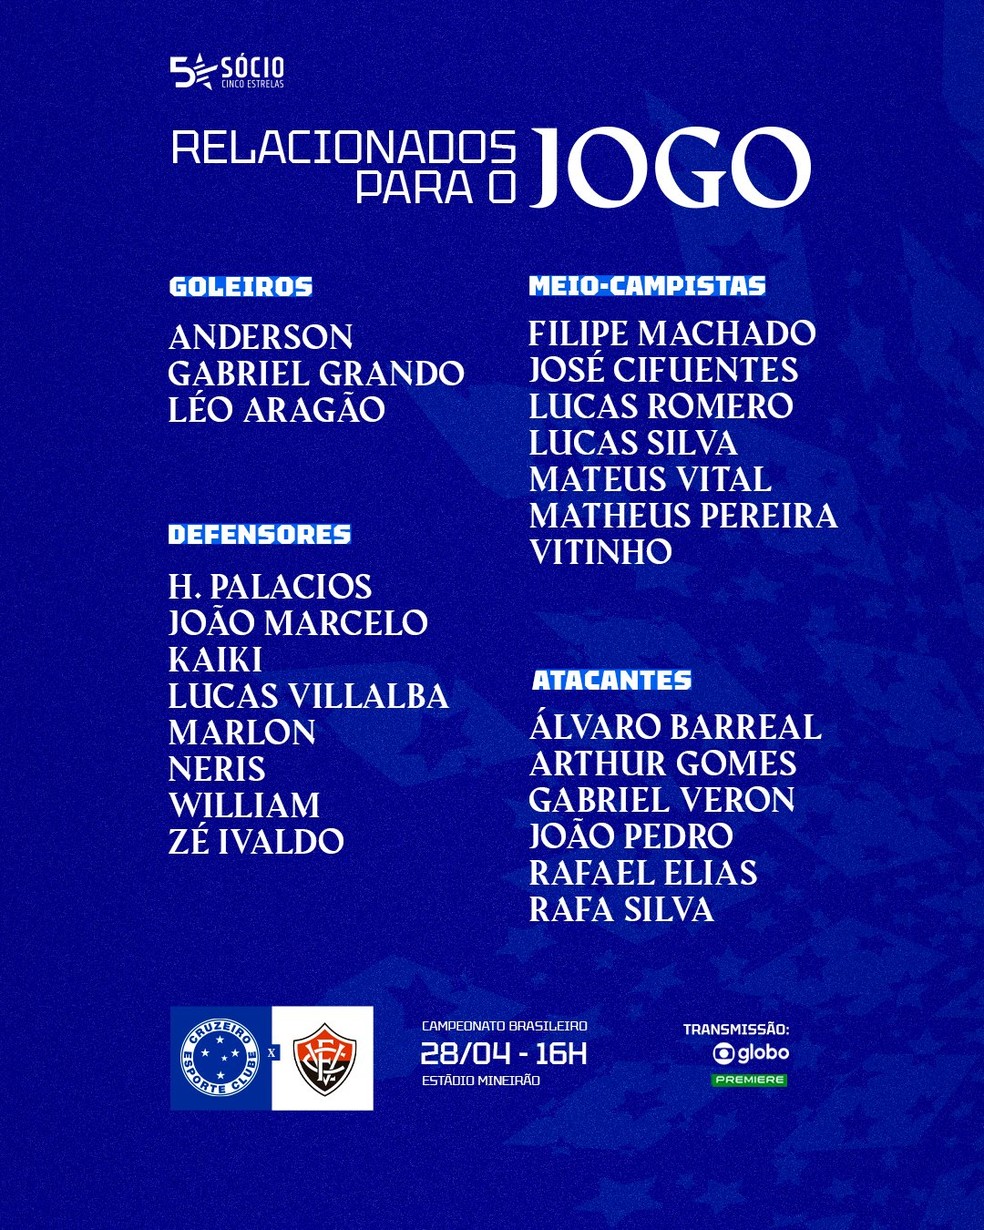 Lista de relacionados do Cruzeiro para o jogo deste domingo — Foto: Divulgação